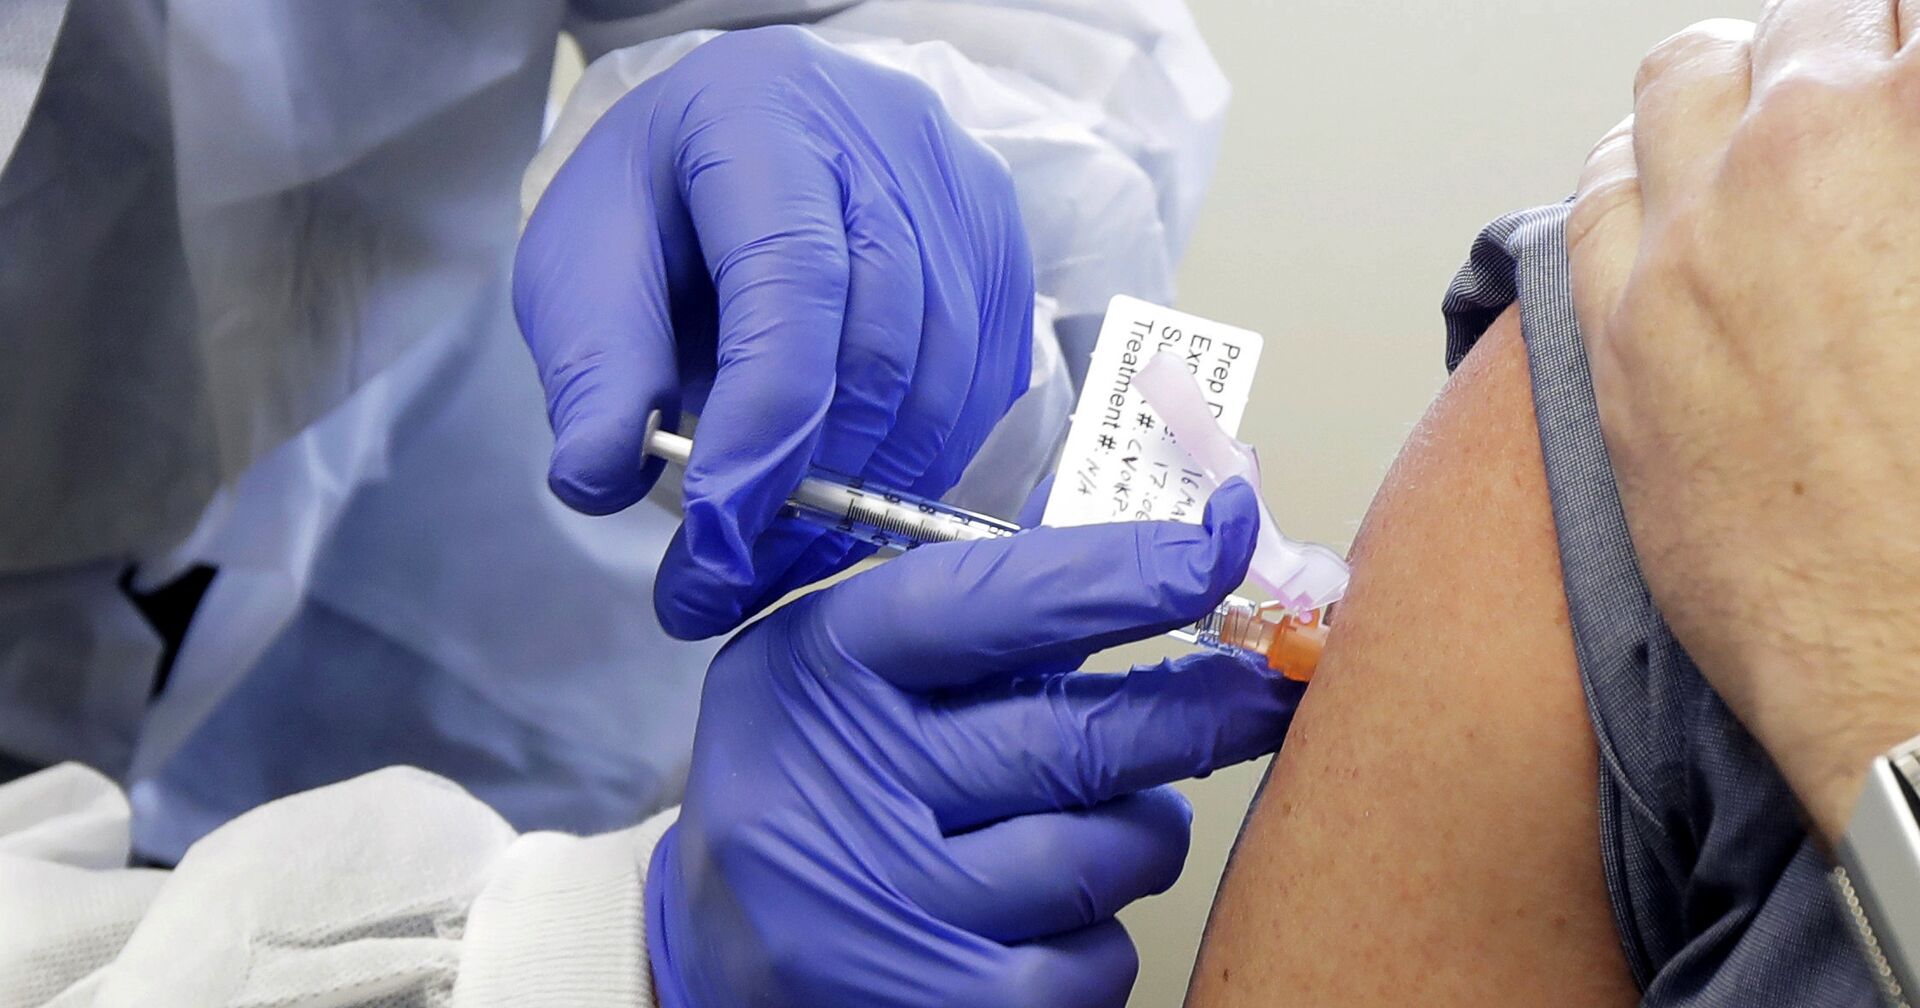 Участнику клинических испытаний вакцины от коронавируса делают инъекцию, Великобритания - ИноСМИ, 1920, 07.12.2020